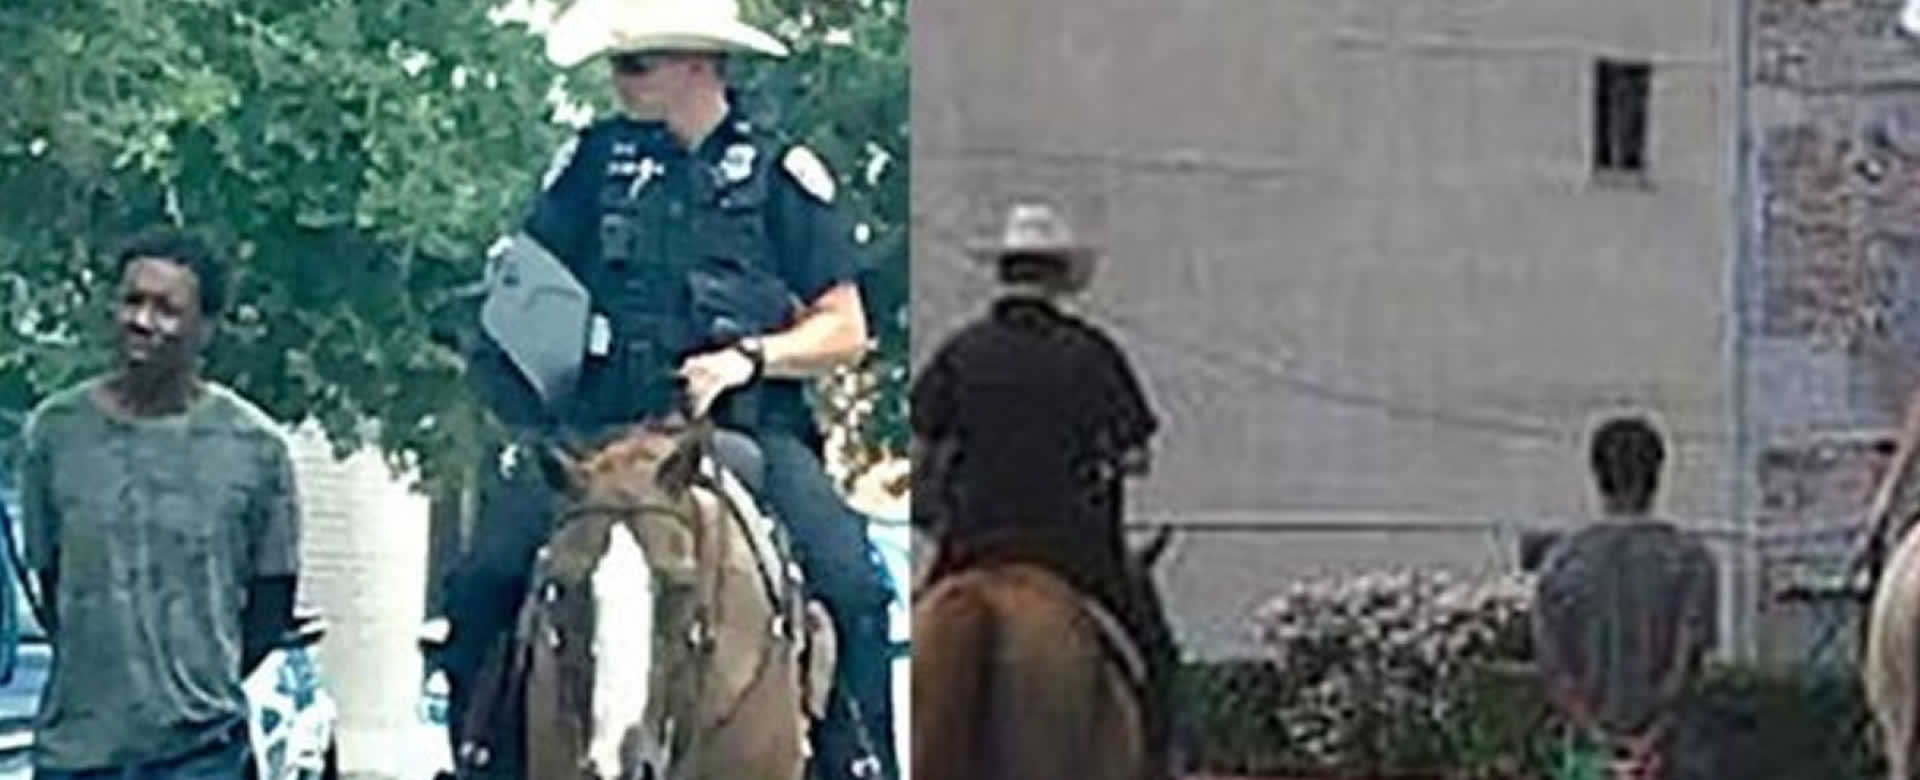 Policía Texano amarra a un afroamericano y lo jala con una soga mientras cabalgaba